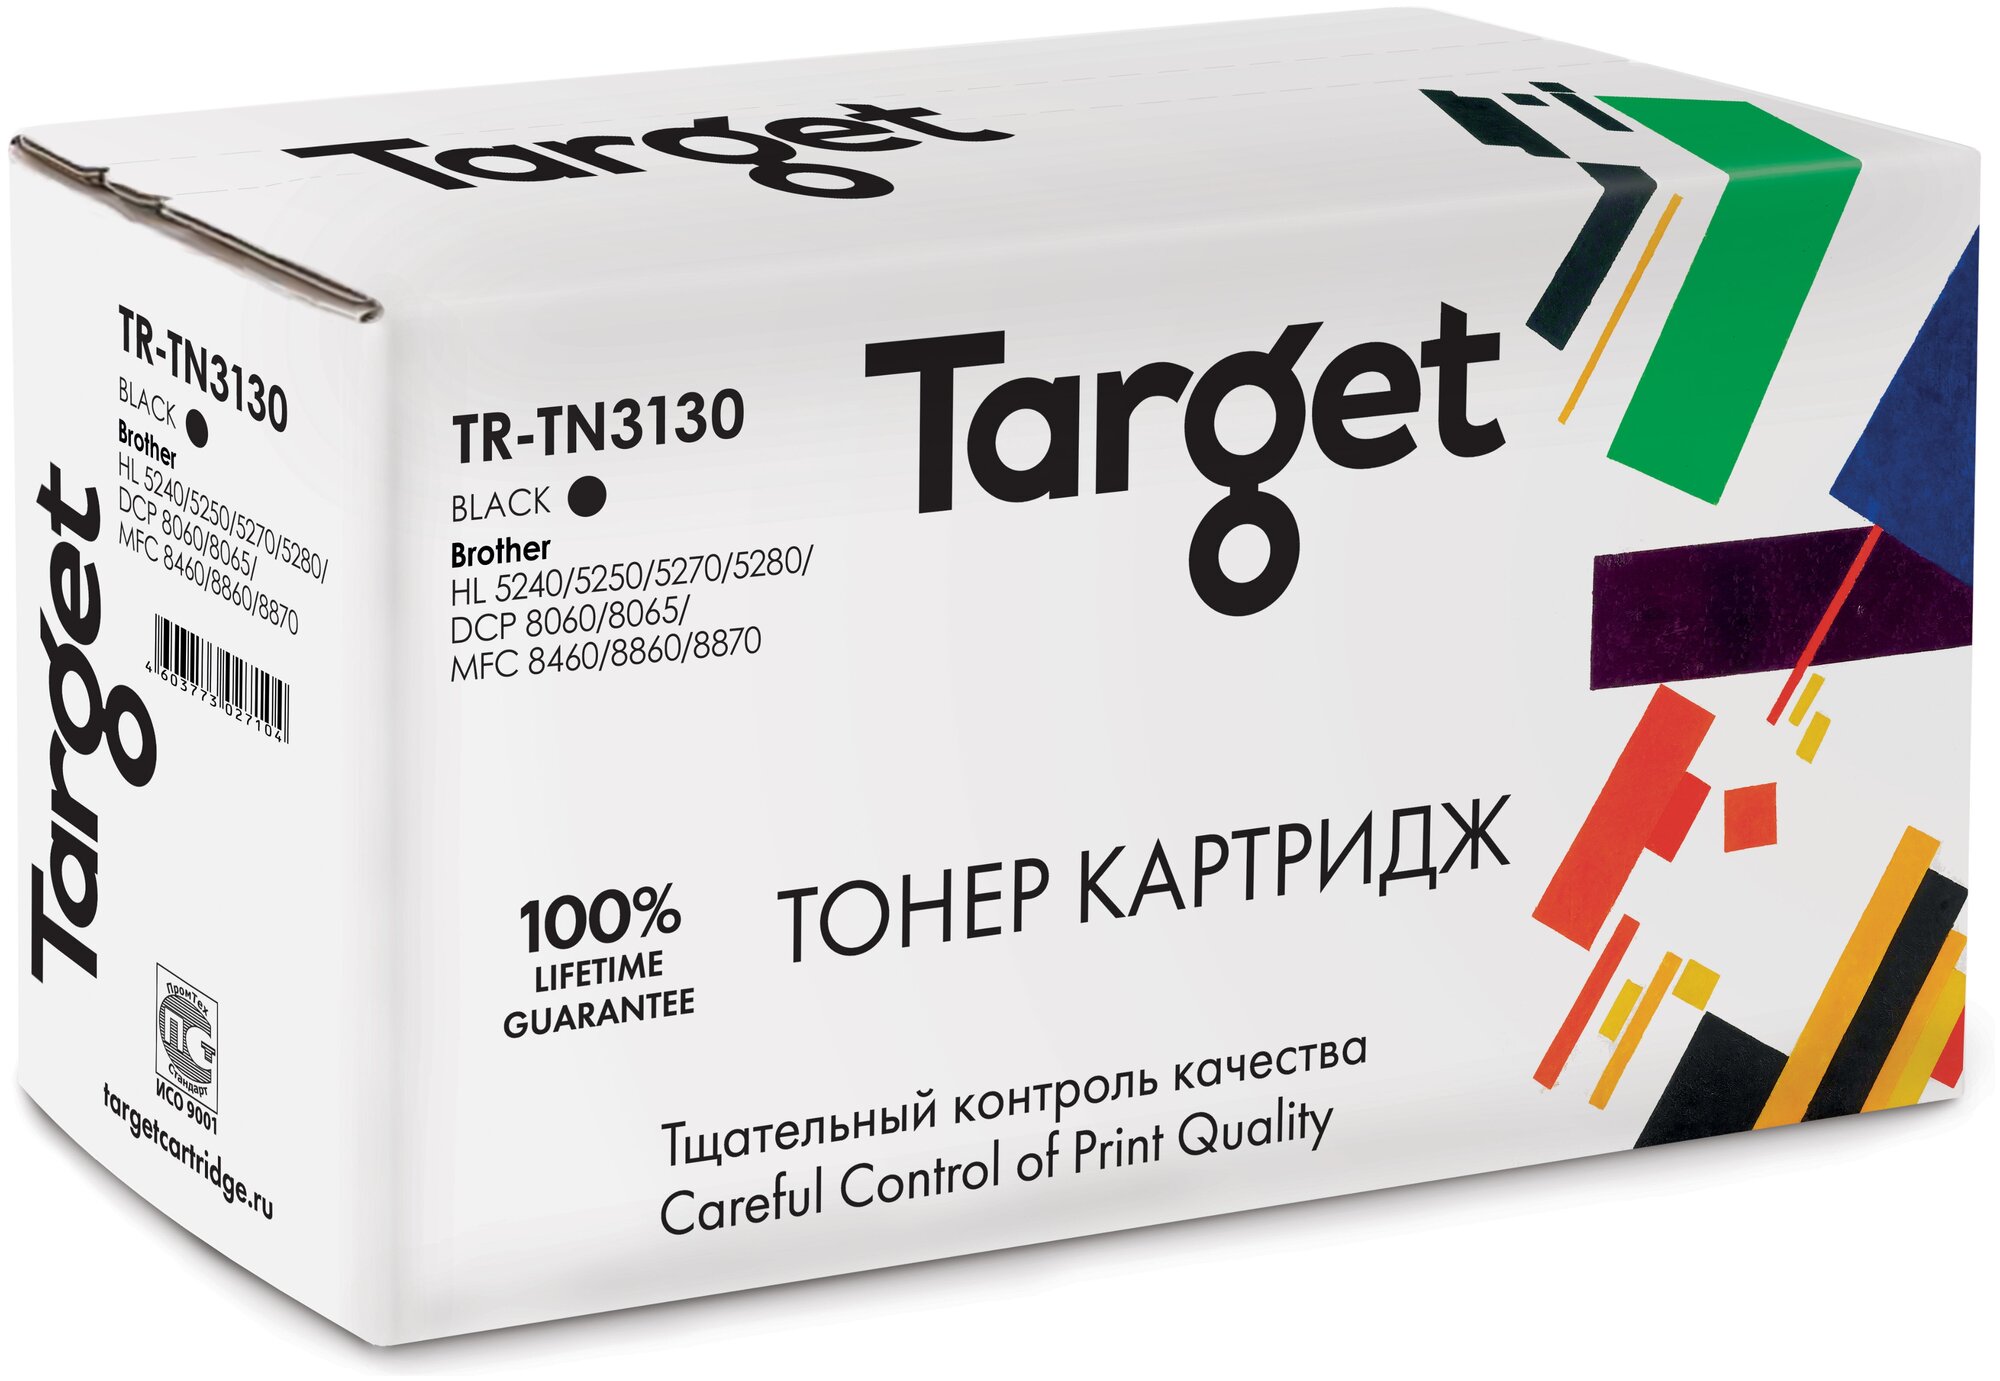 Тонер-картридж Target TN3130, черный, для лазерного принтера, совместимый